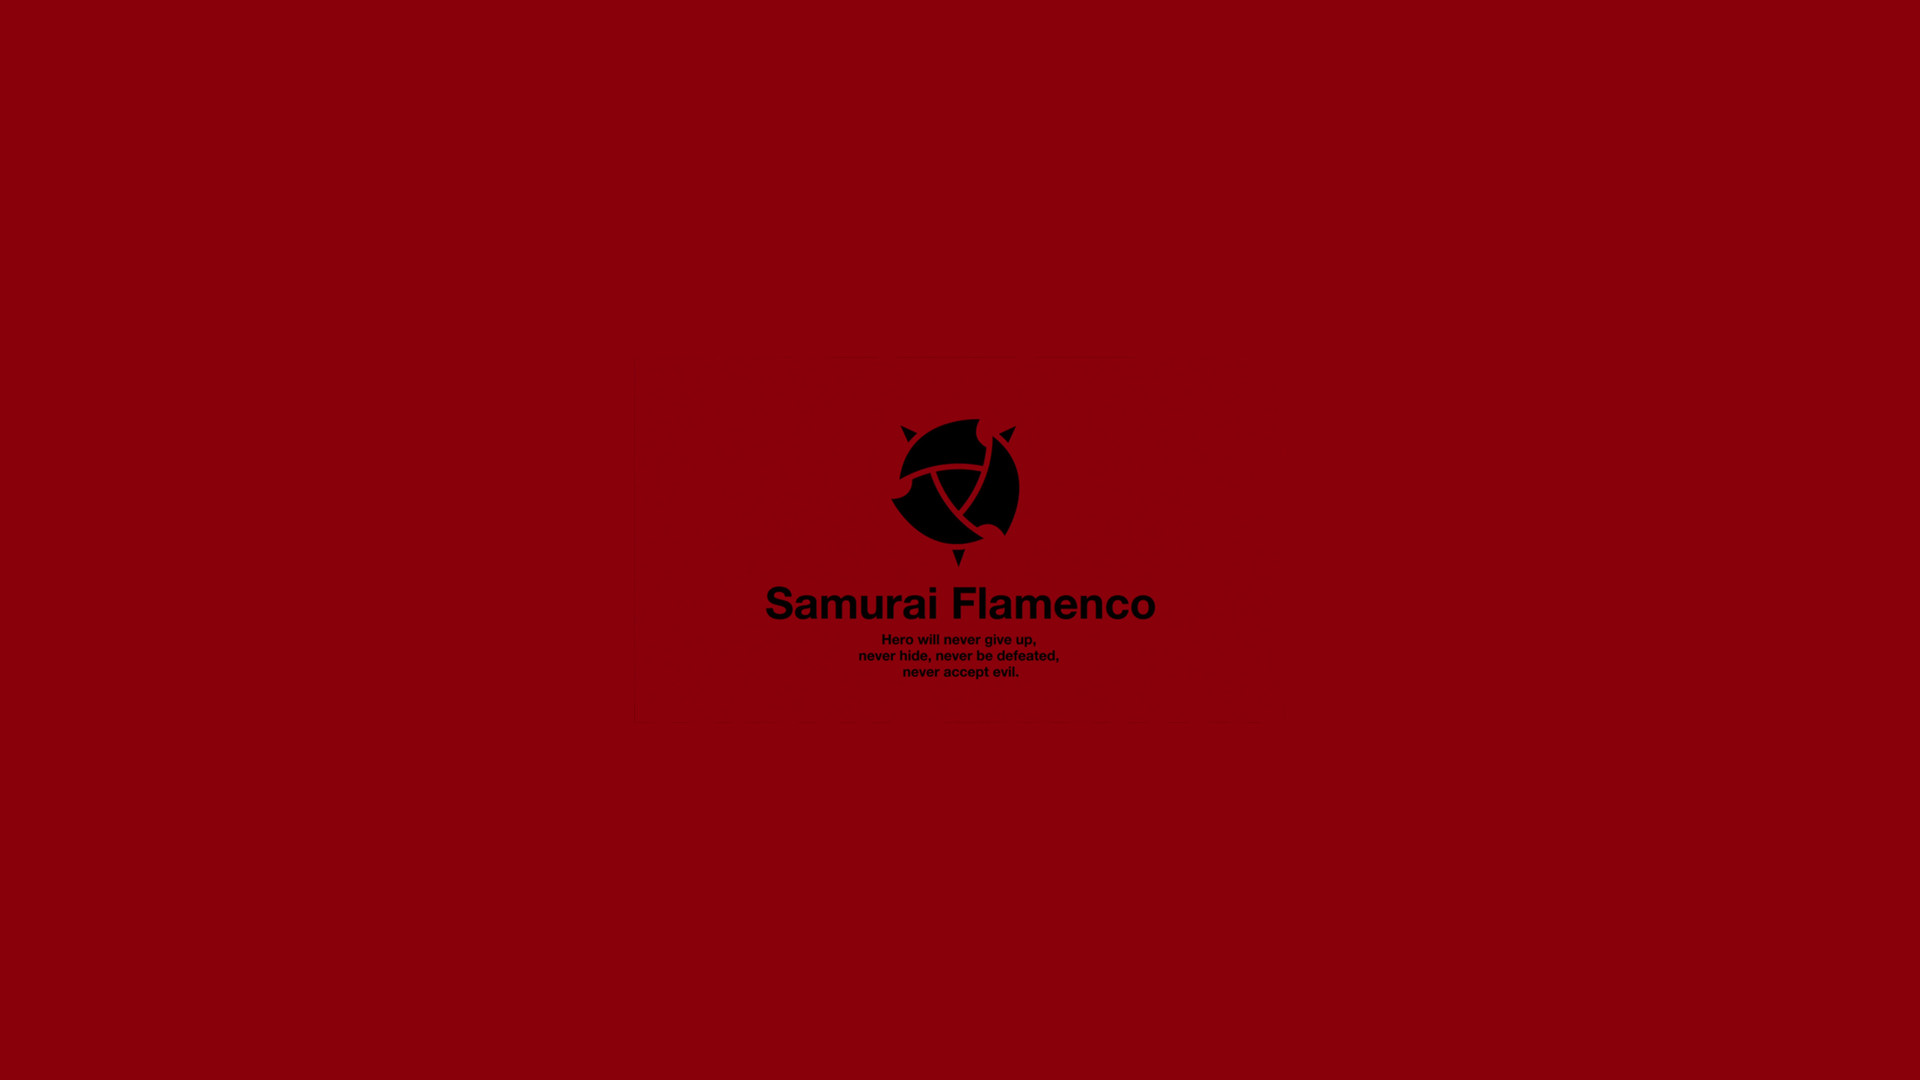 1920x1080 69KiB, , Samurai Flamenco Wallpaper.png